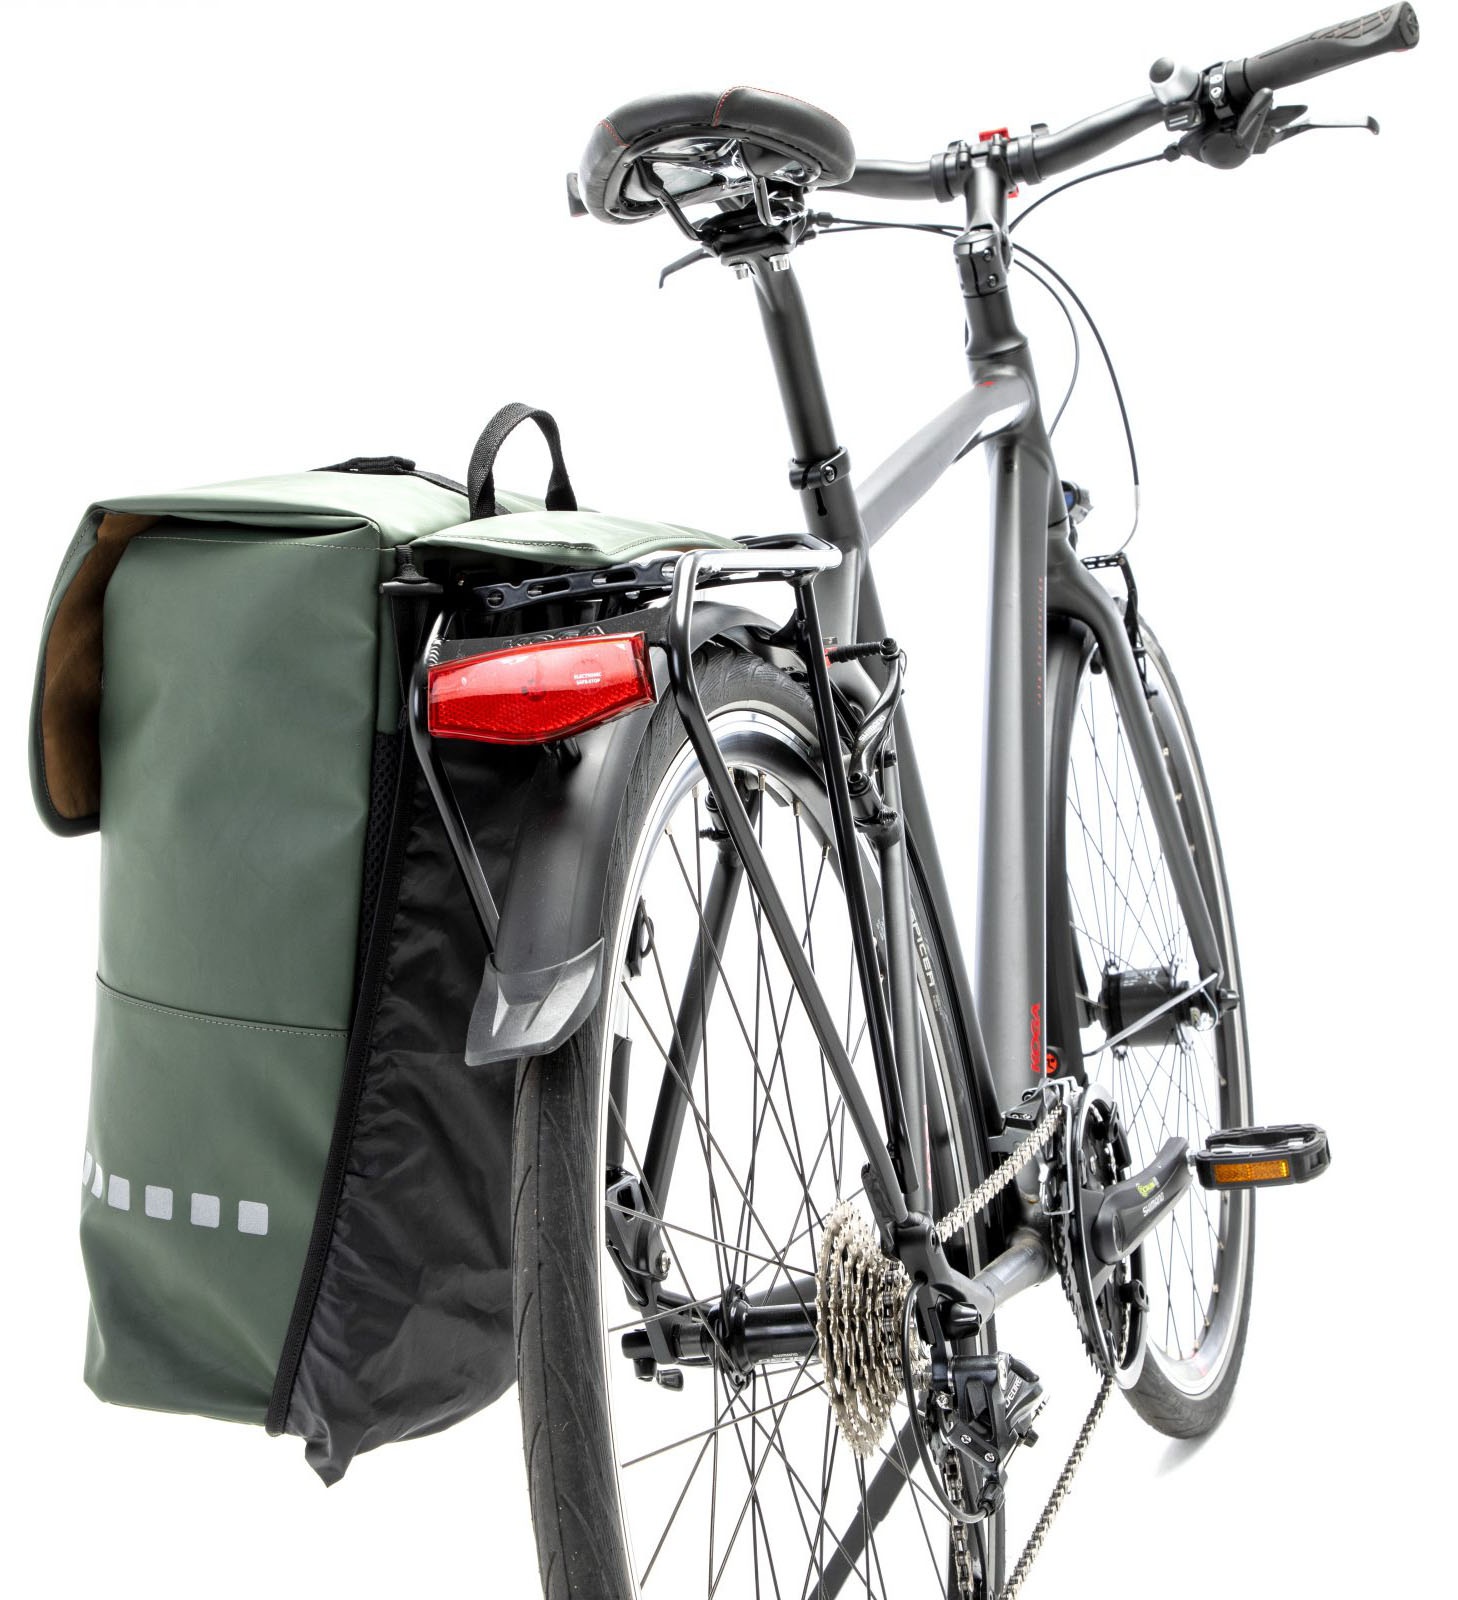 Tilbehør - Cykeltasker - NEW LOOXS Odense Backpack Cykeltaske - Grøn